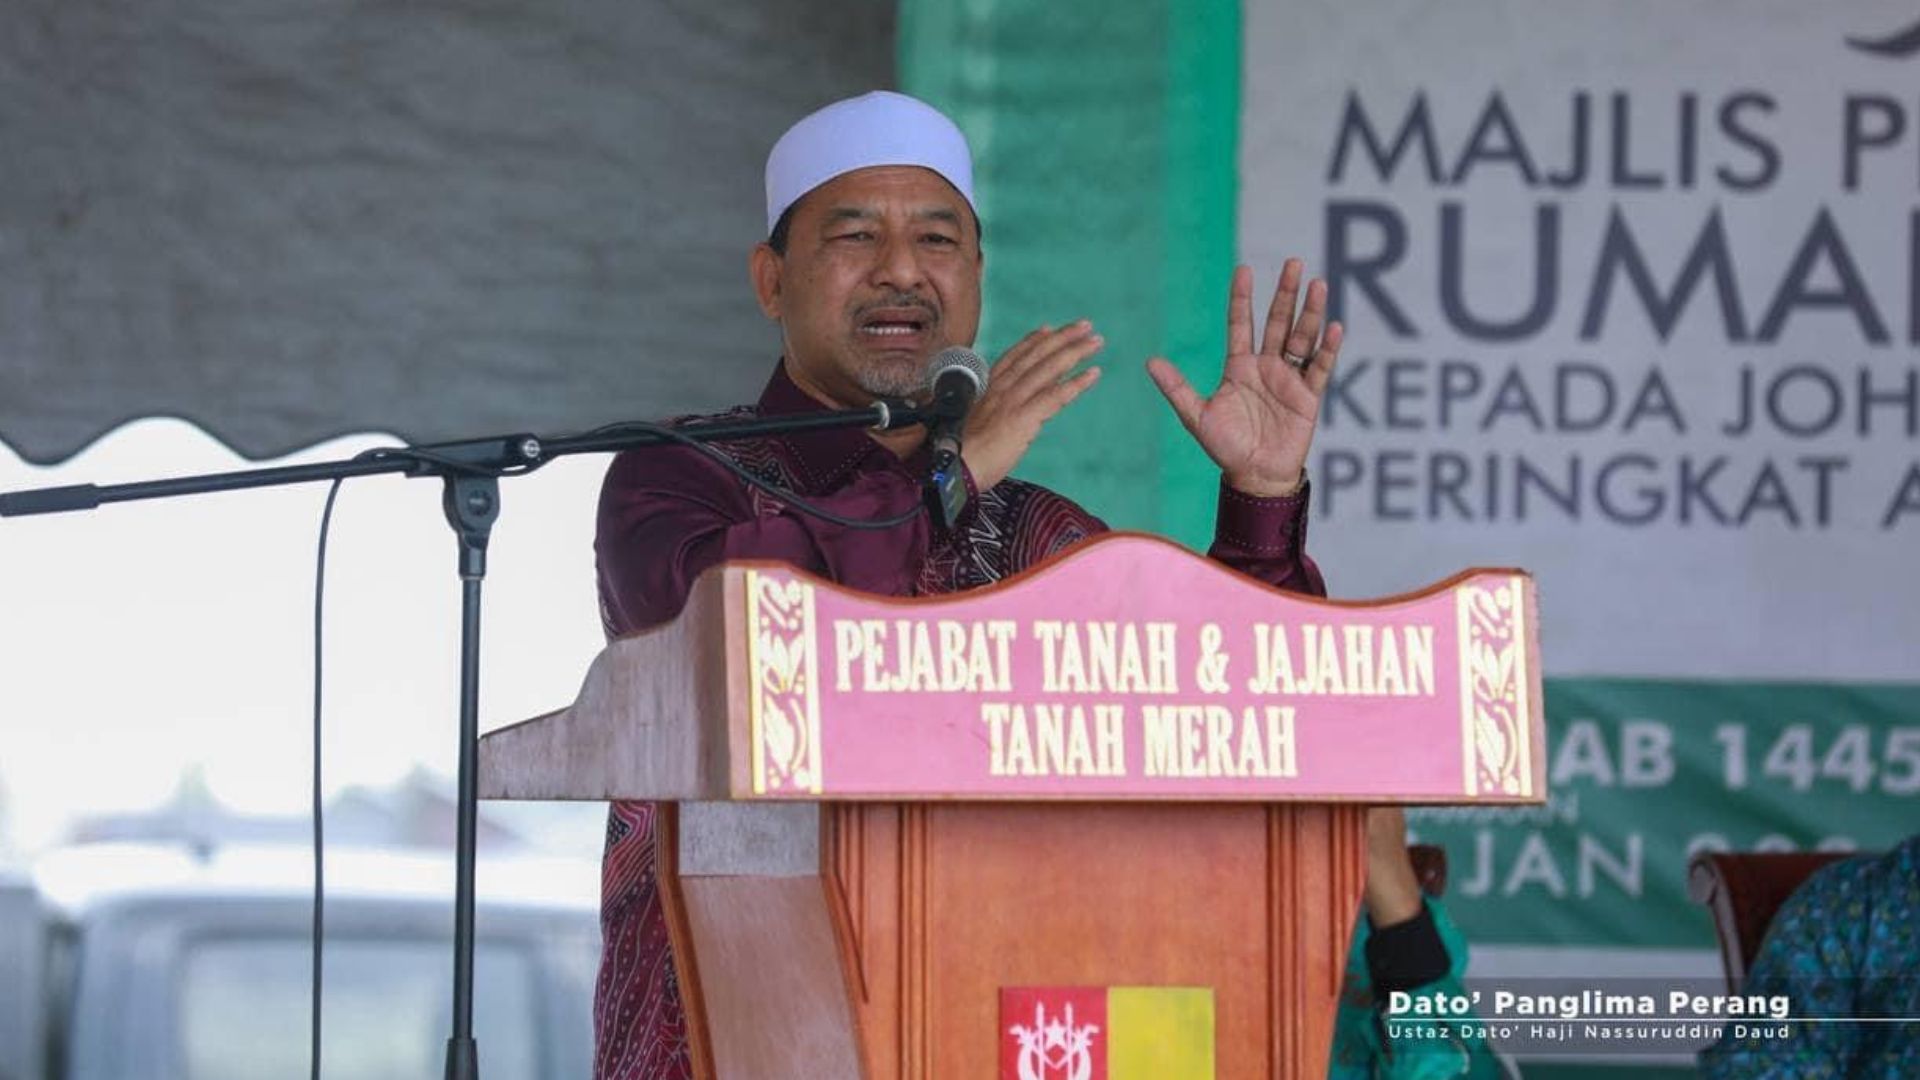 Menteri Besar Kelantan Yakin Kenaikan Tarif Air Tidak Membebankan Rakyat